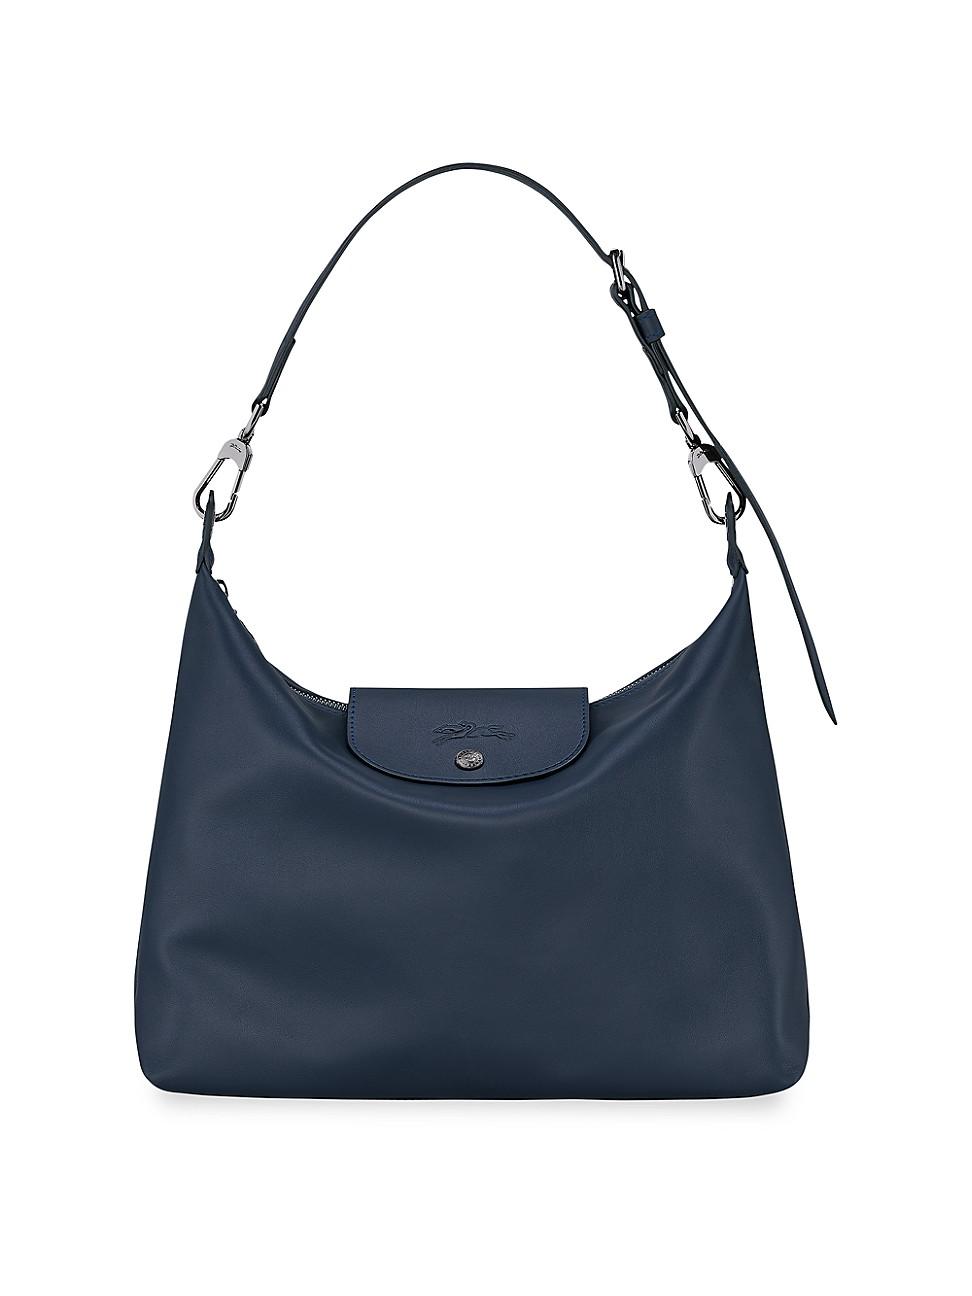 Longchamp Tonal Nylon & Leather Hobo Bag in Blue